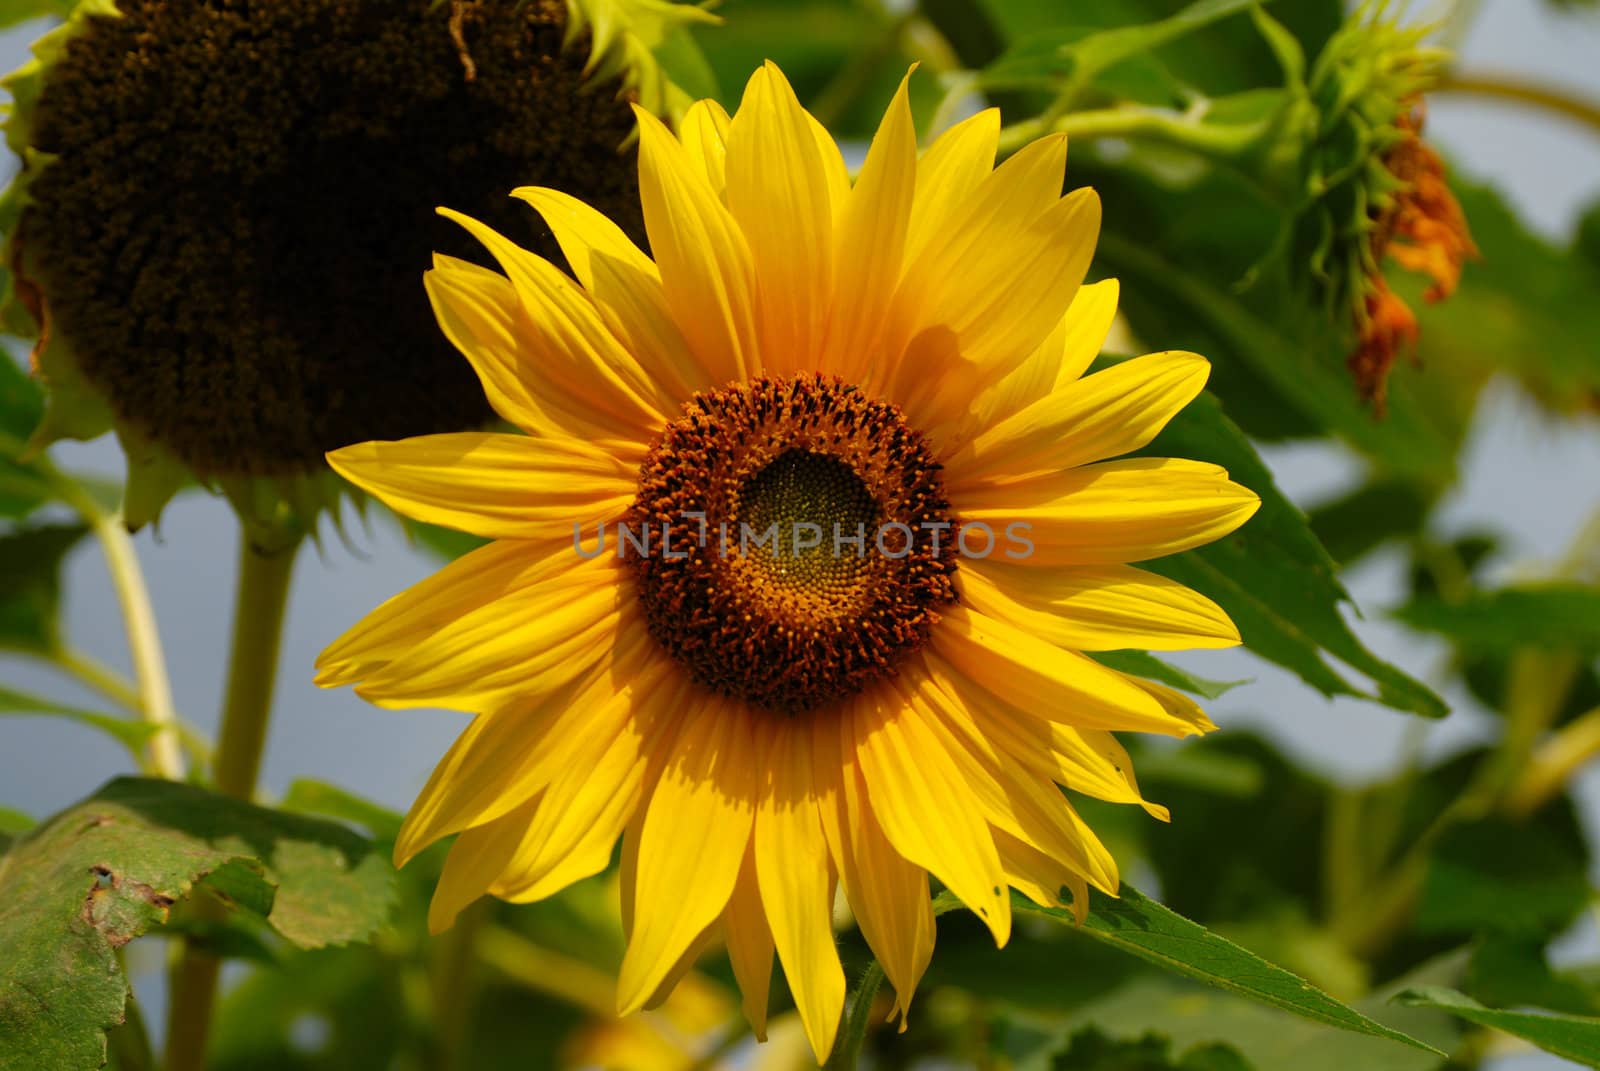 Sunflower by zagart36